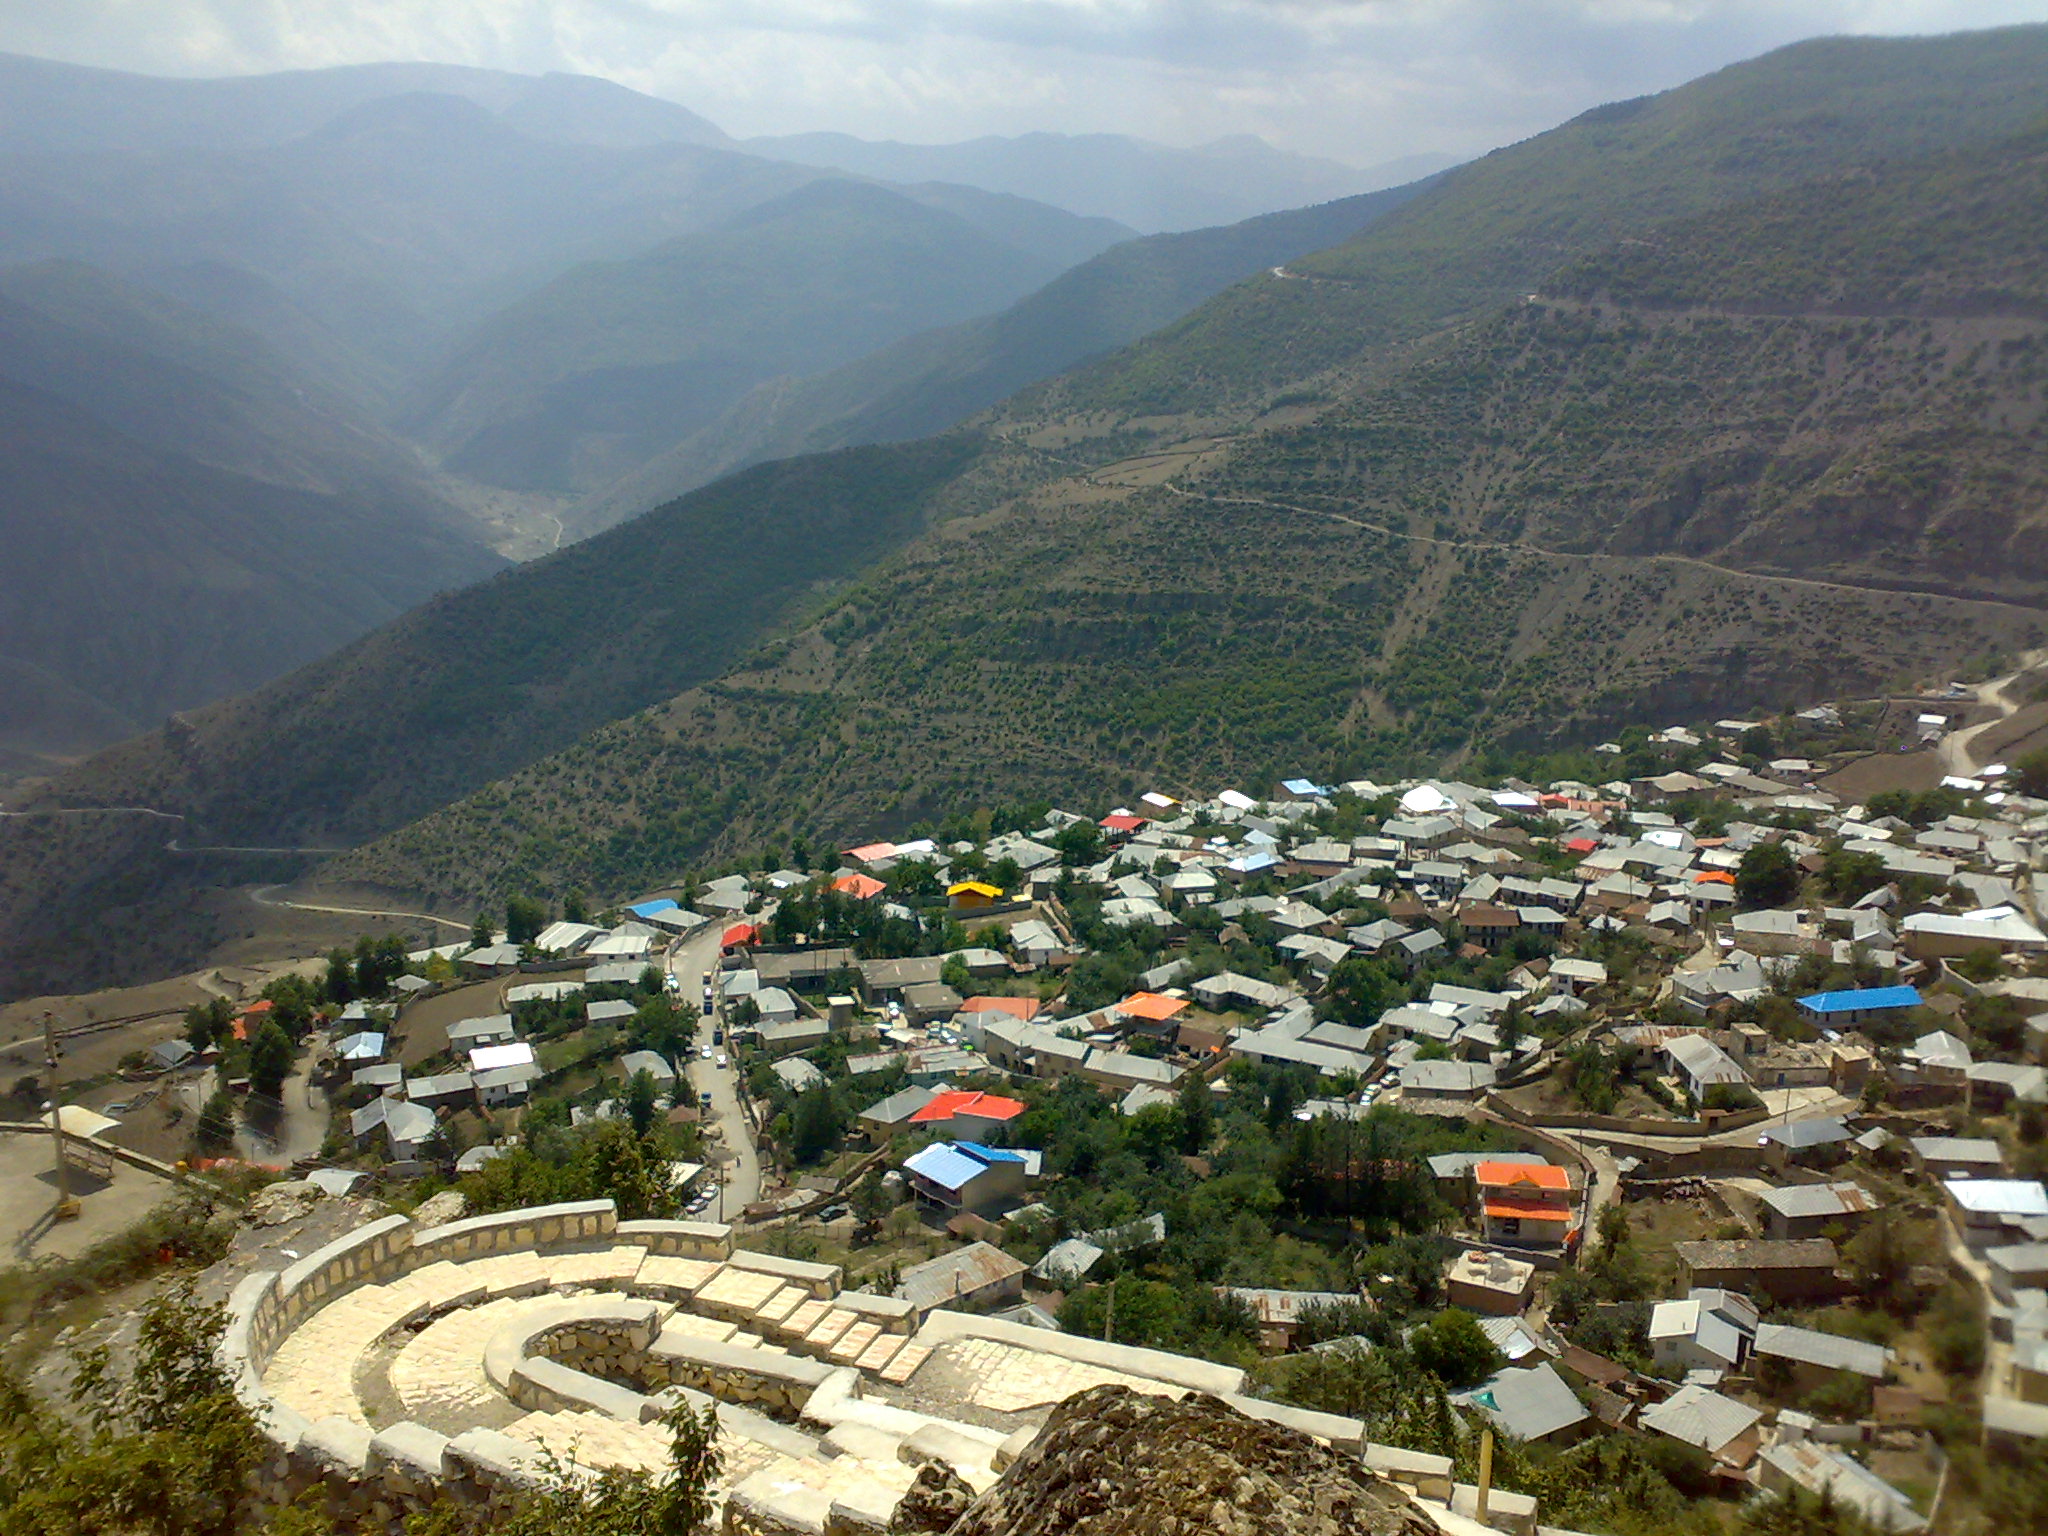 شهر زیبای آلاشت - سواد کوه - استان مازندران